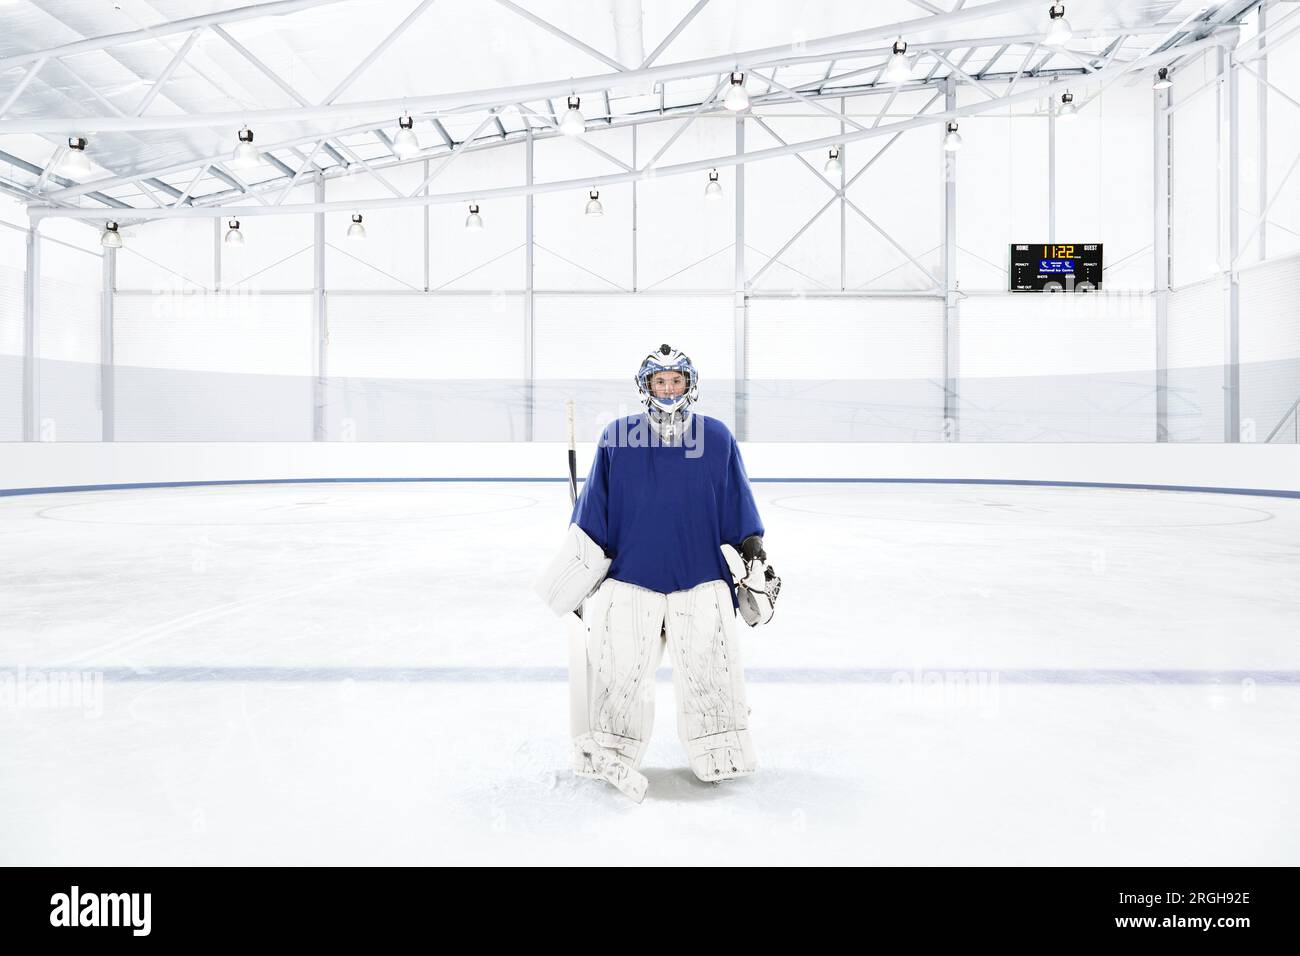 Eishockey Torwart trägt eine blaue Uniform an eine Eisbahn Stockfoto